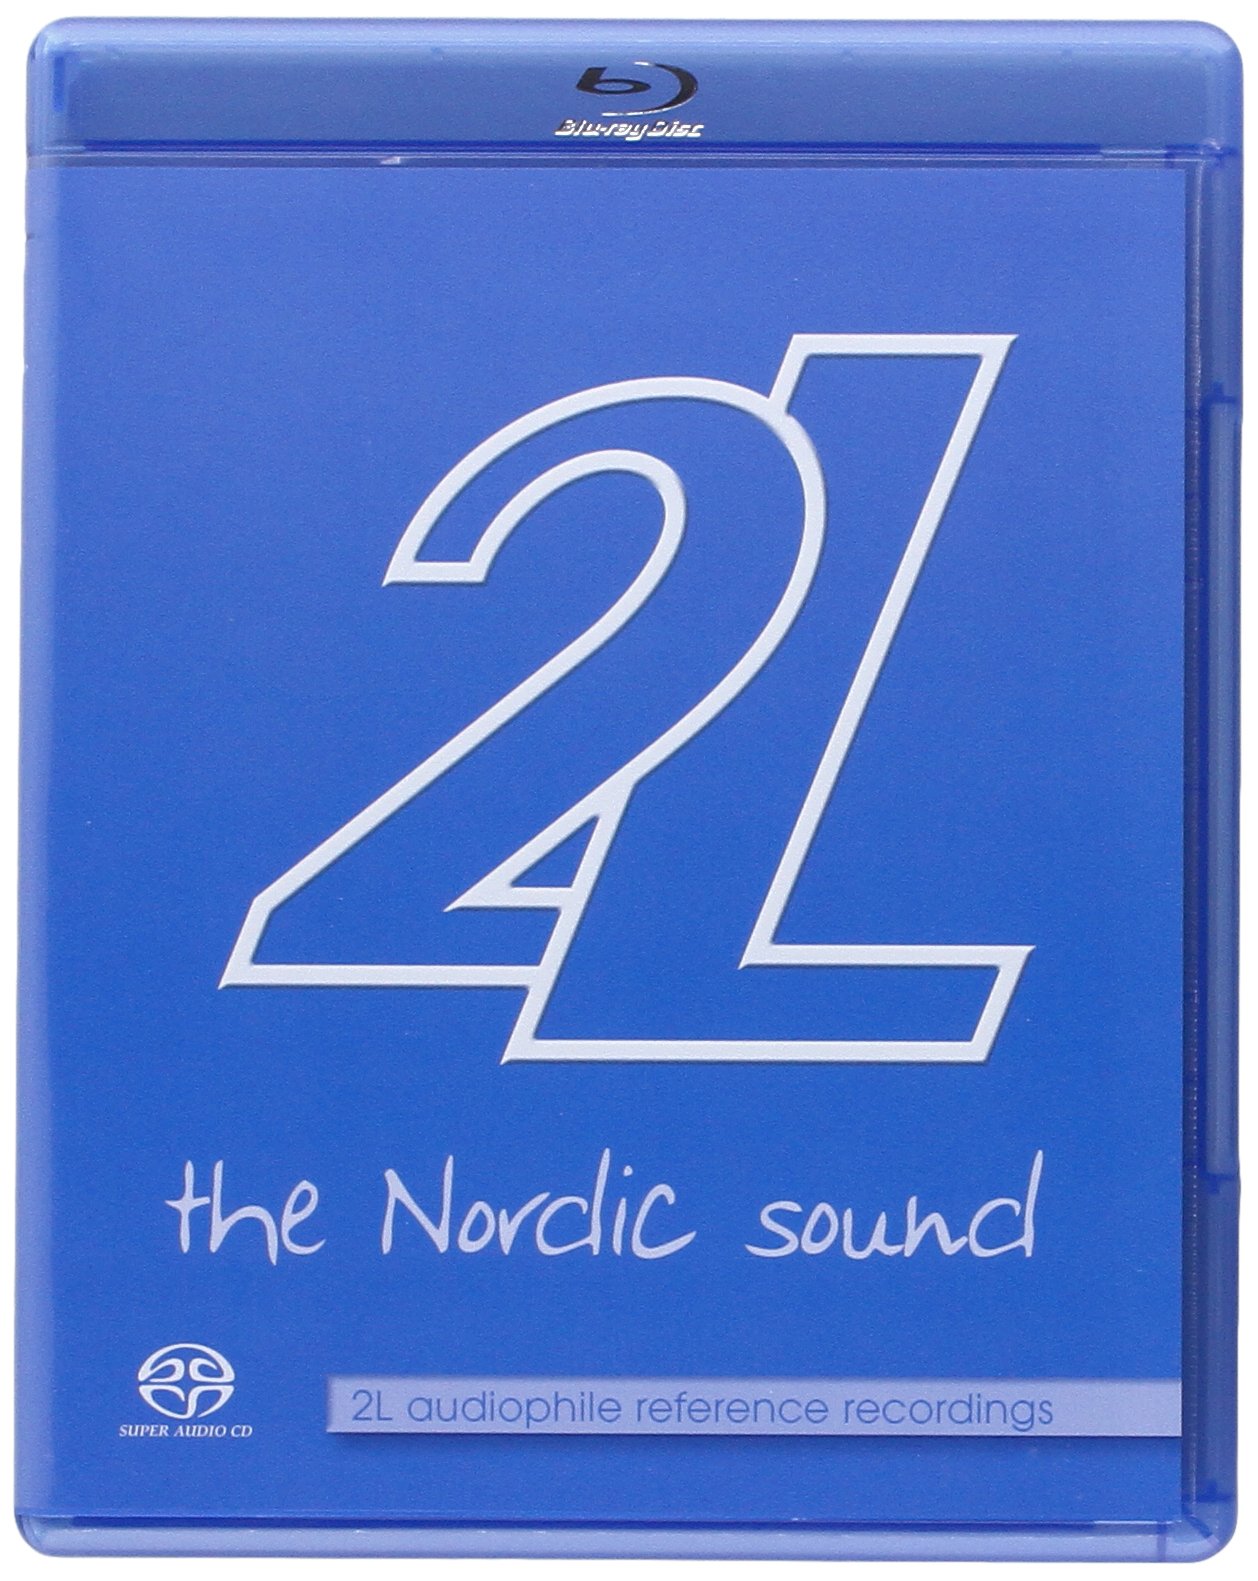 Blu-Ray Audio Nordic Sound (The):2L Audiophile Recordings (Sacd+Blu-Ray) NUOVO SIGILLATO, EDIZIONE DEL 13/04/2009 SUBITO DISPONIBILE